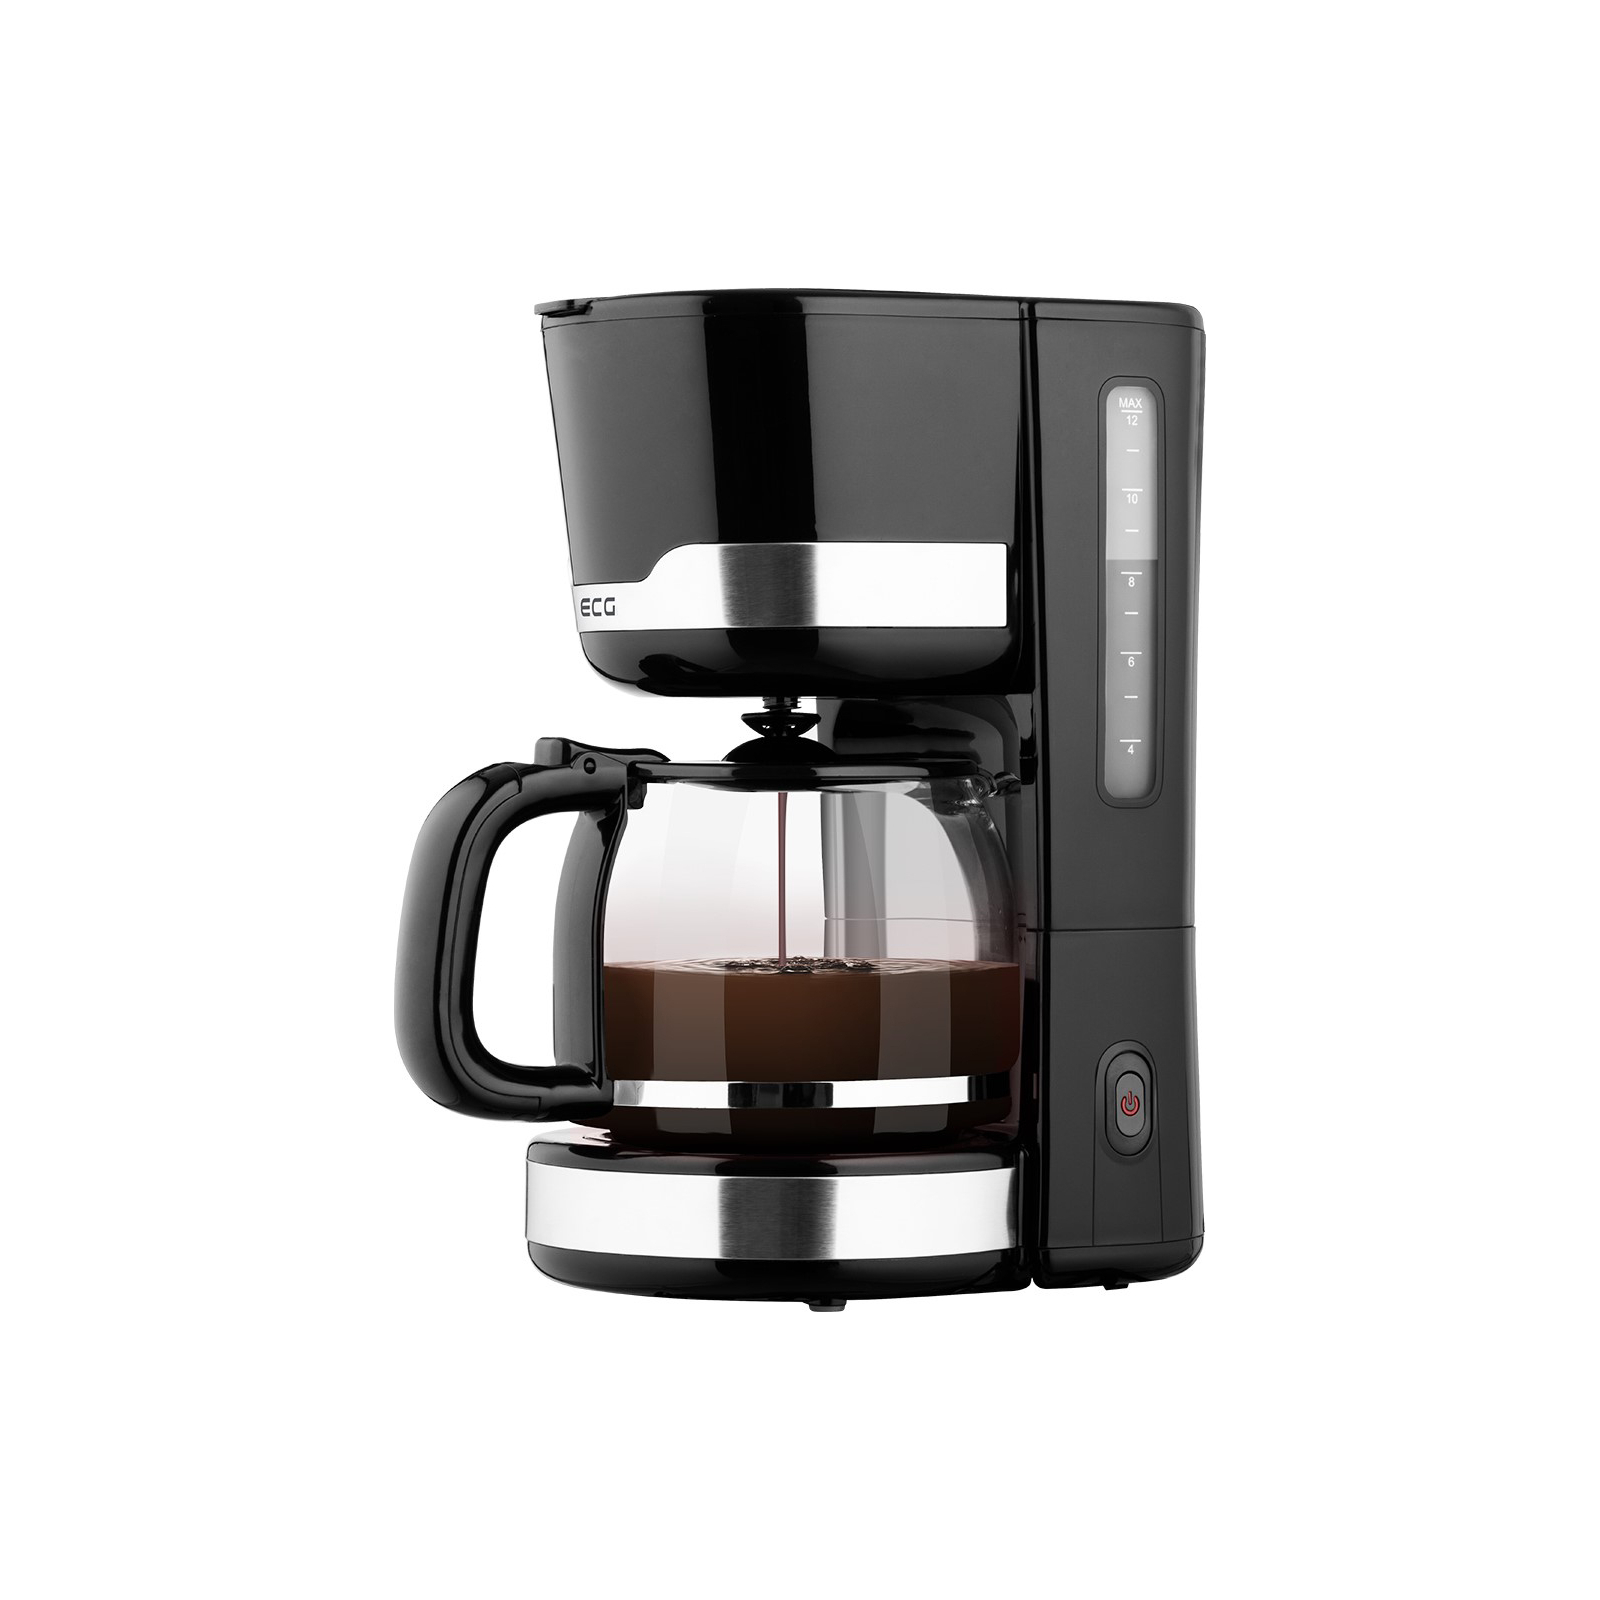 Капельная кофеварка ECG KP 2115 Black (KP2115 Black) изображение 3